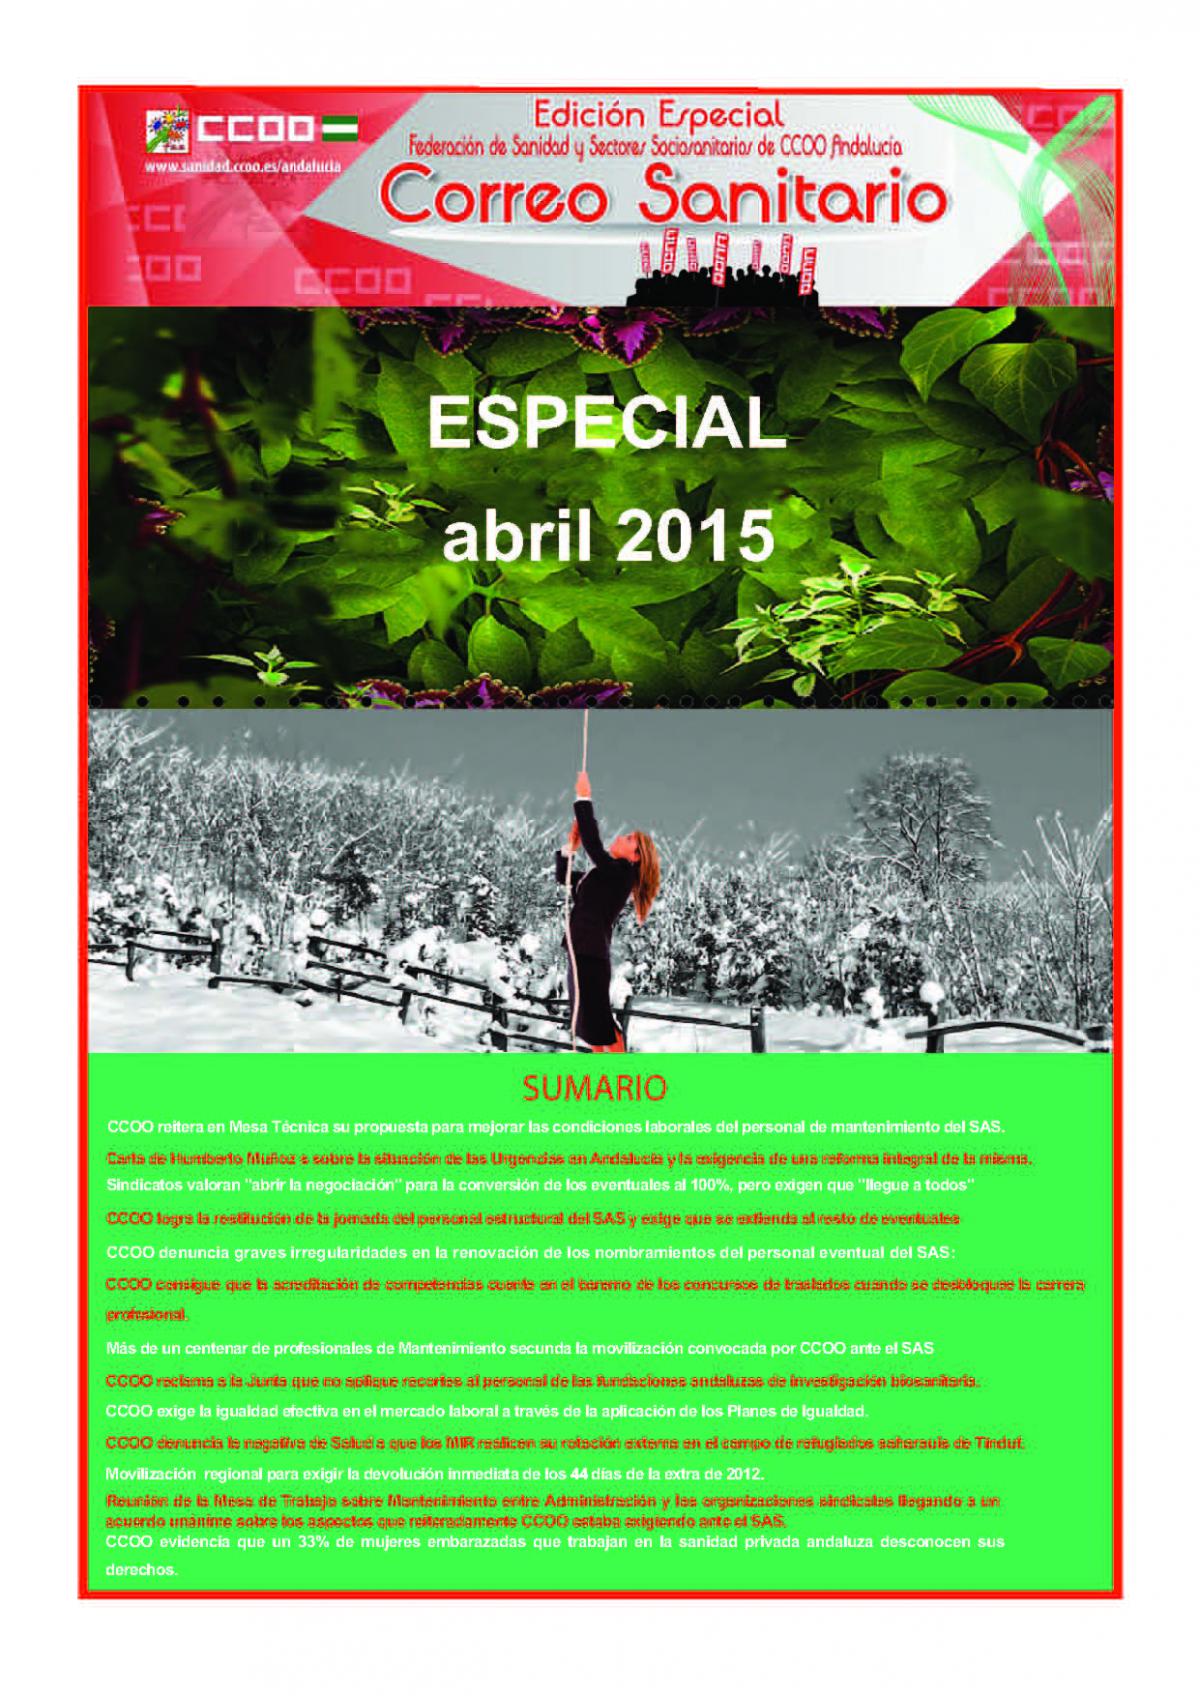 Correo Sanitario EDICION ESPECIAL ABRIL 2015